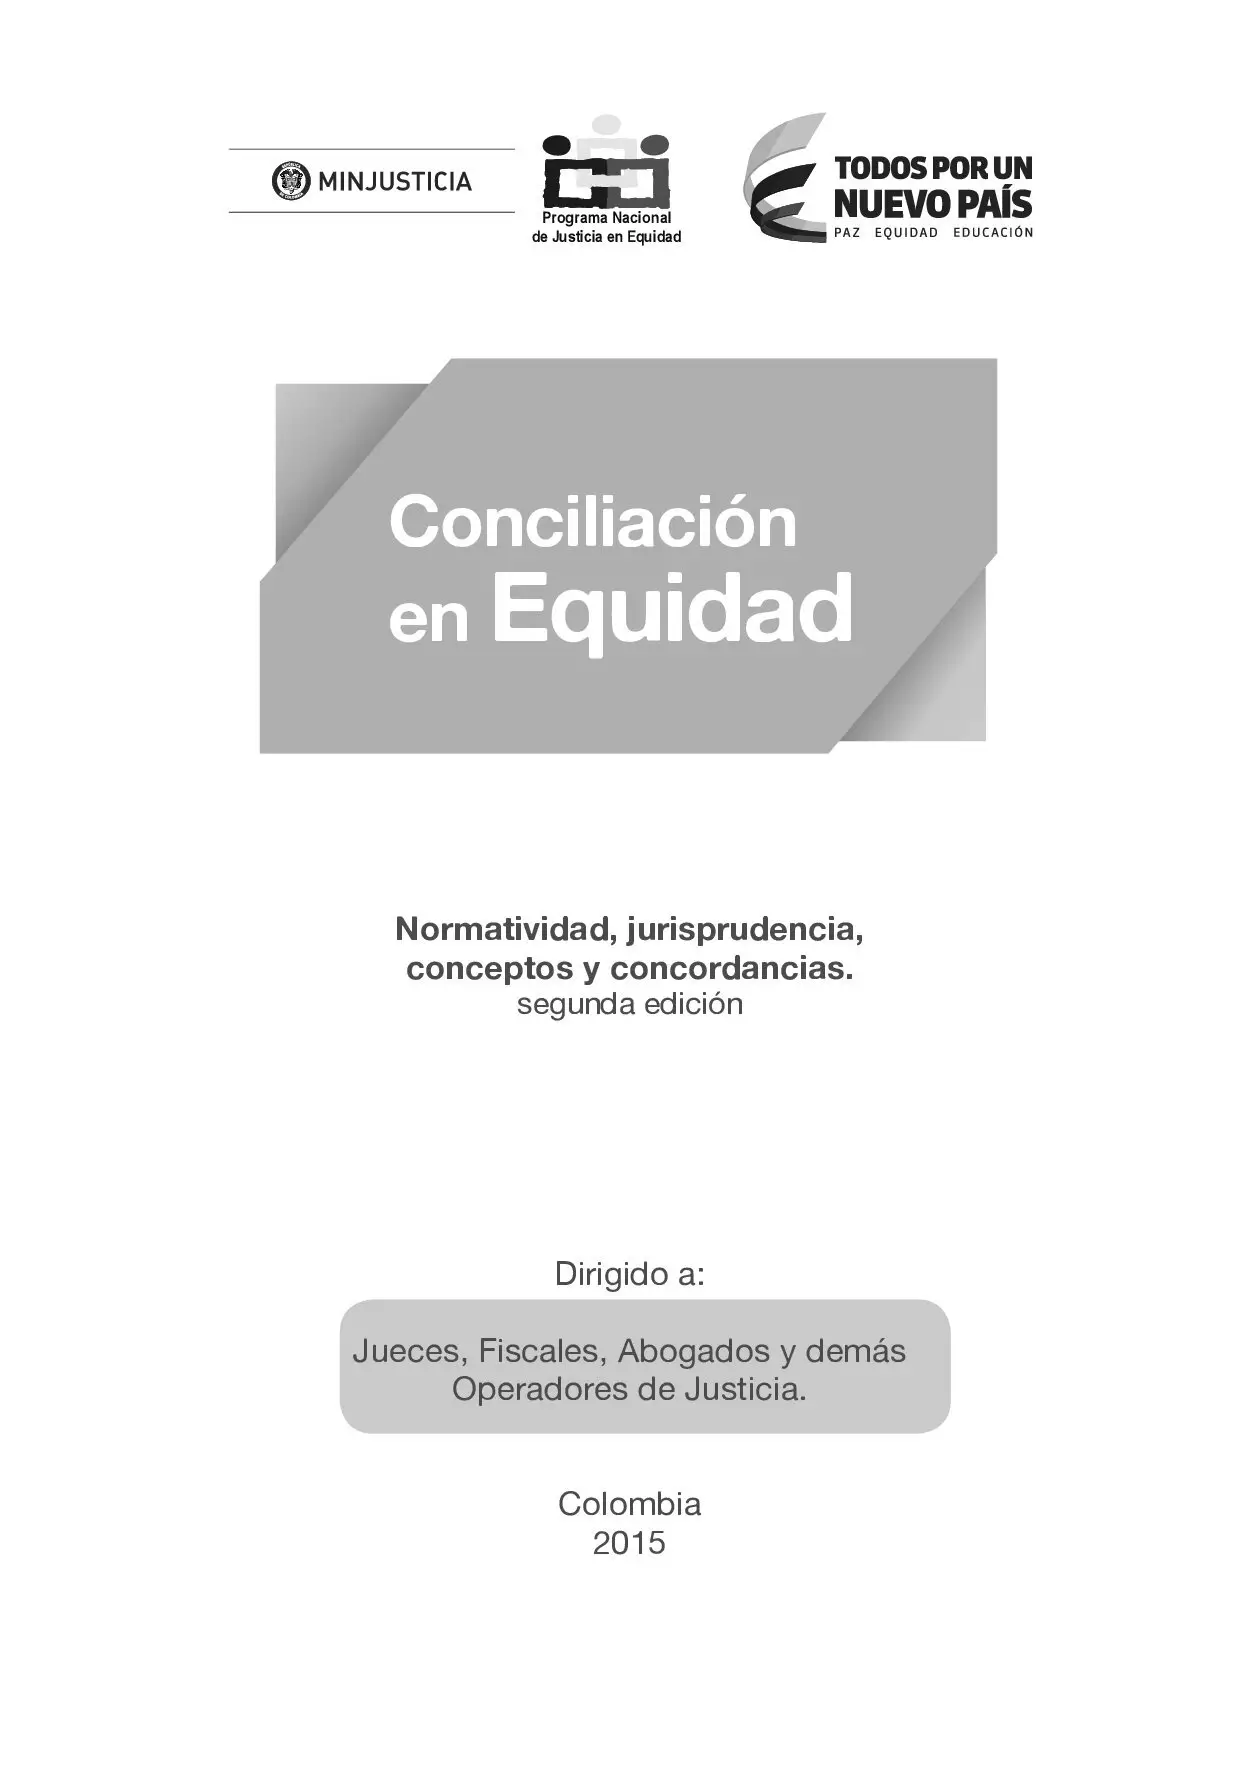 2015 Conciliación en Equidad_00001